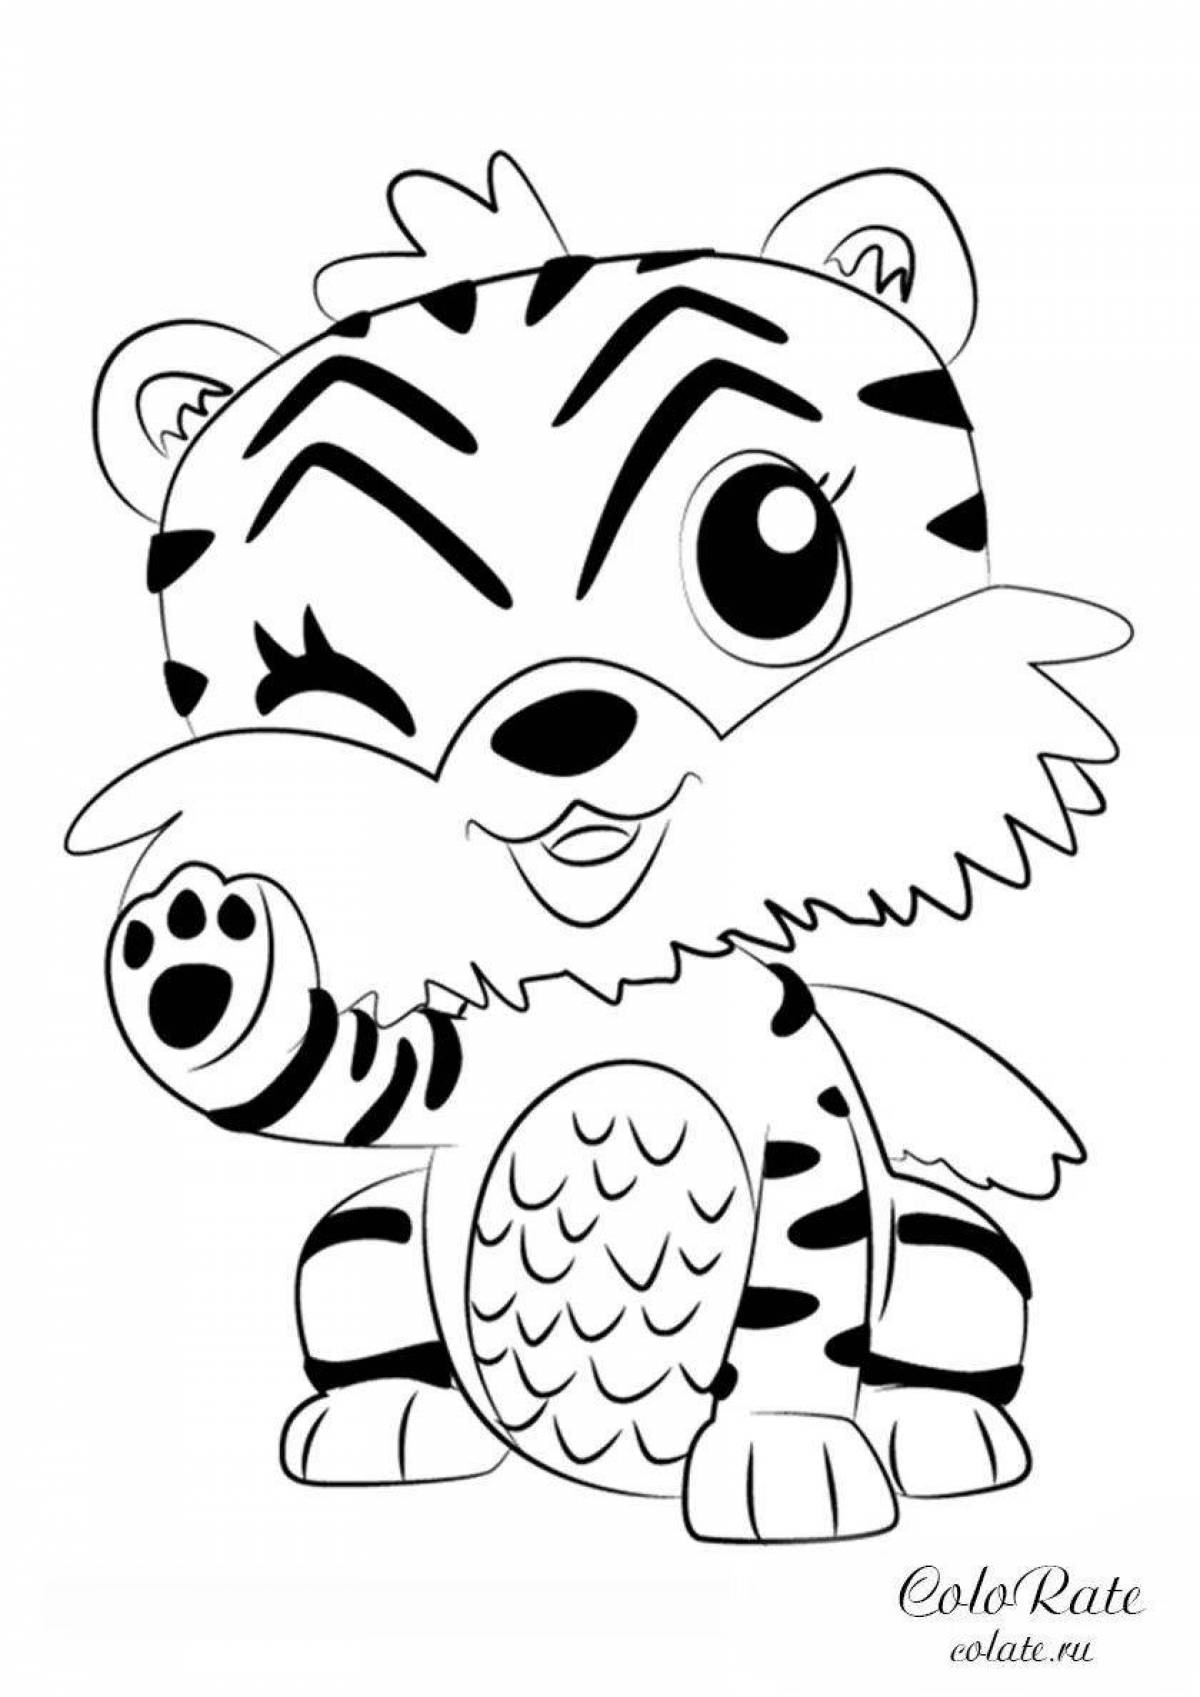 Charming tiger cub coloring book